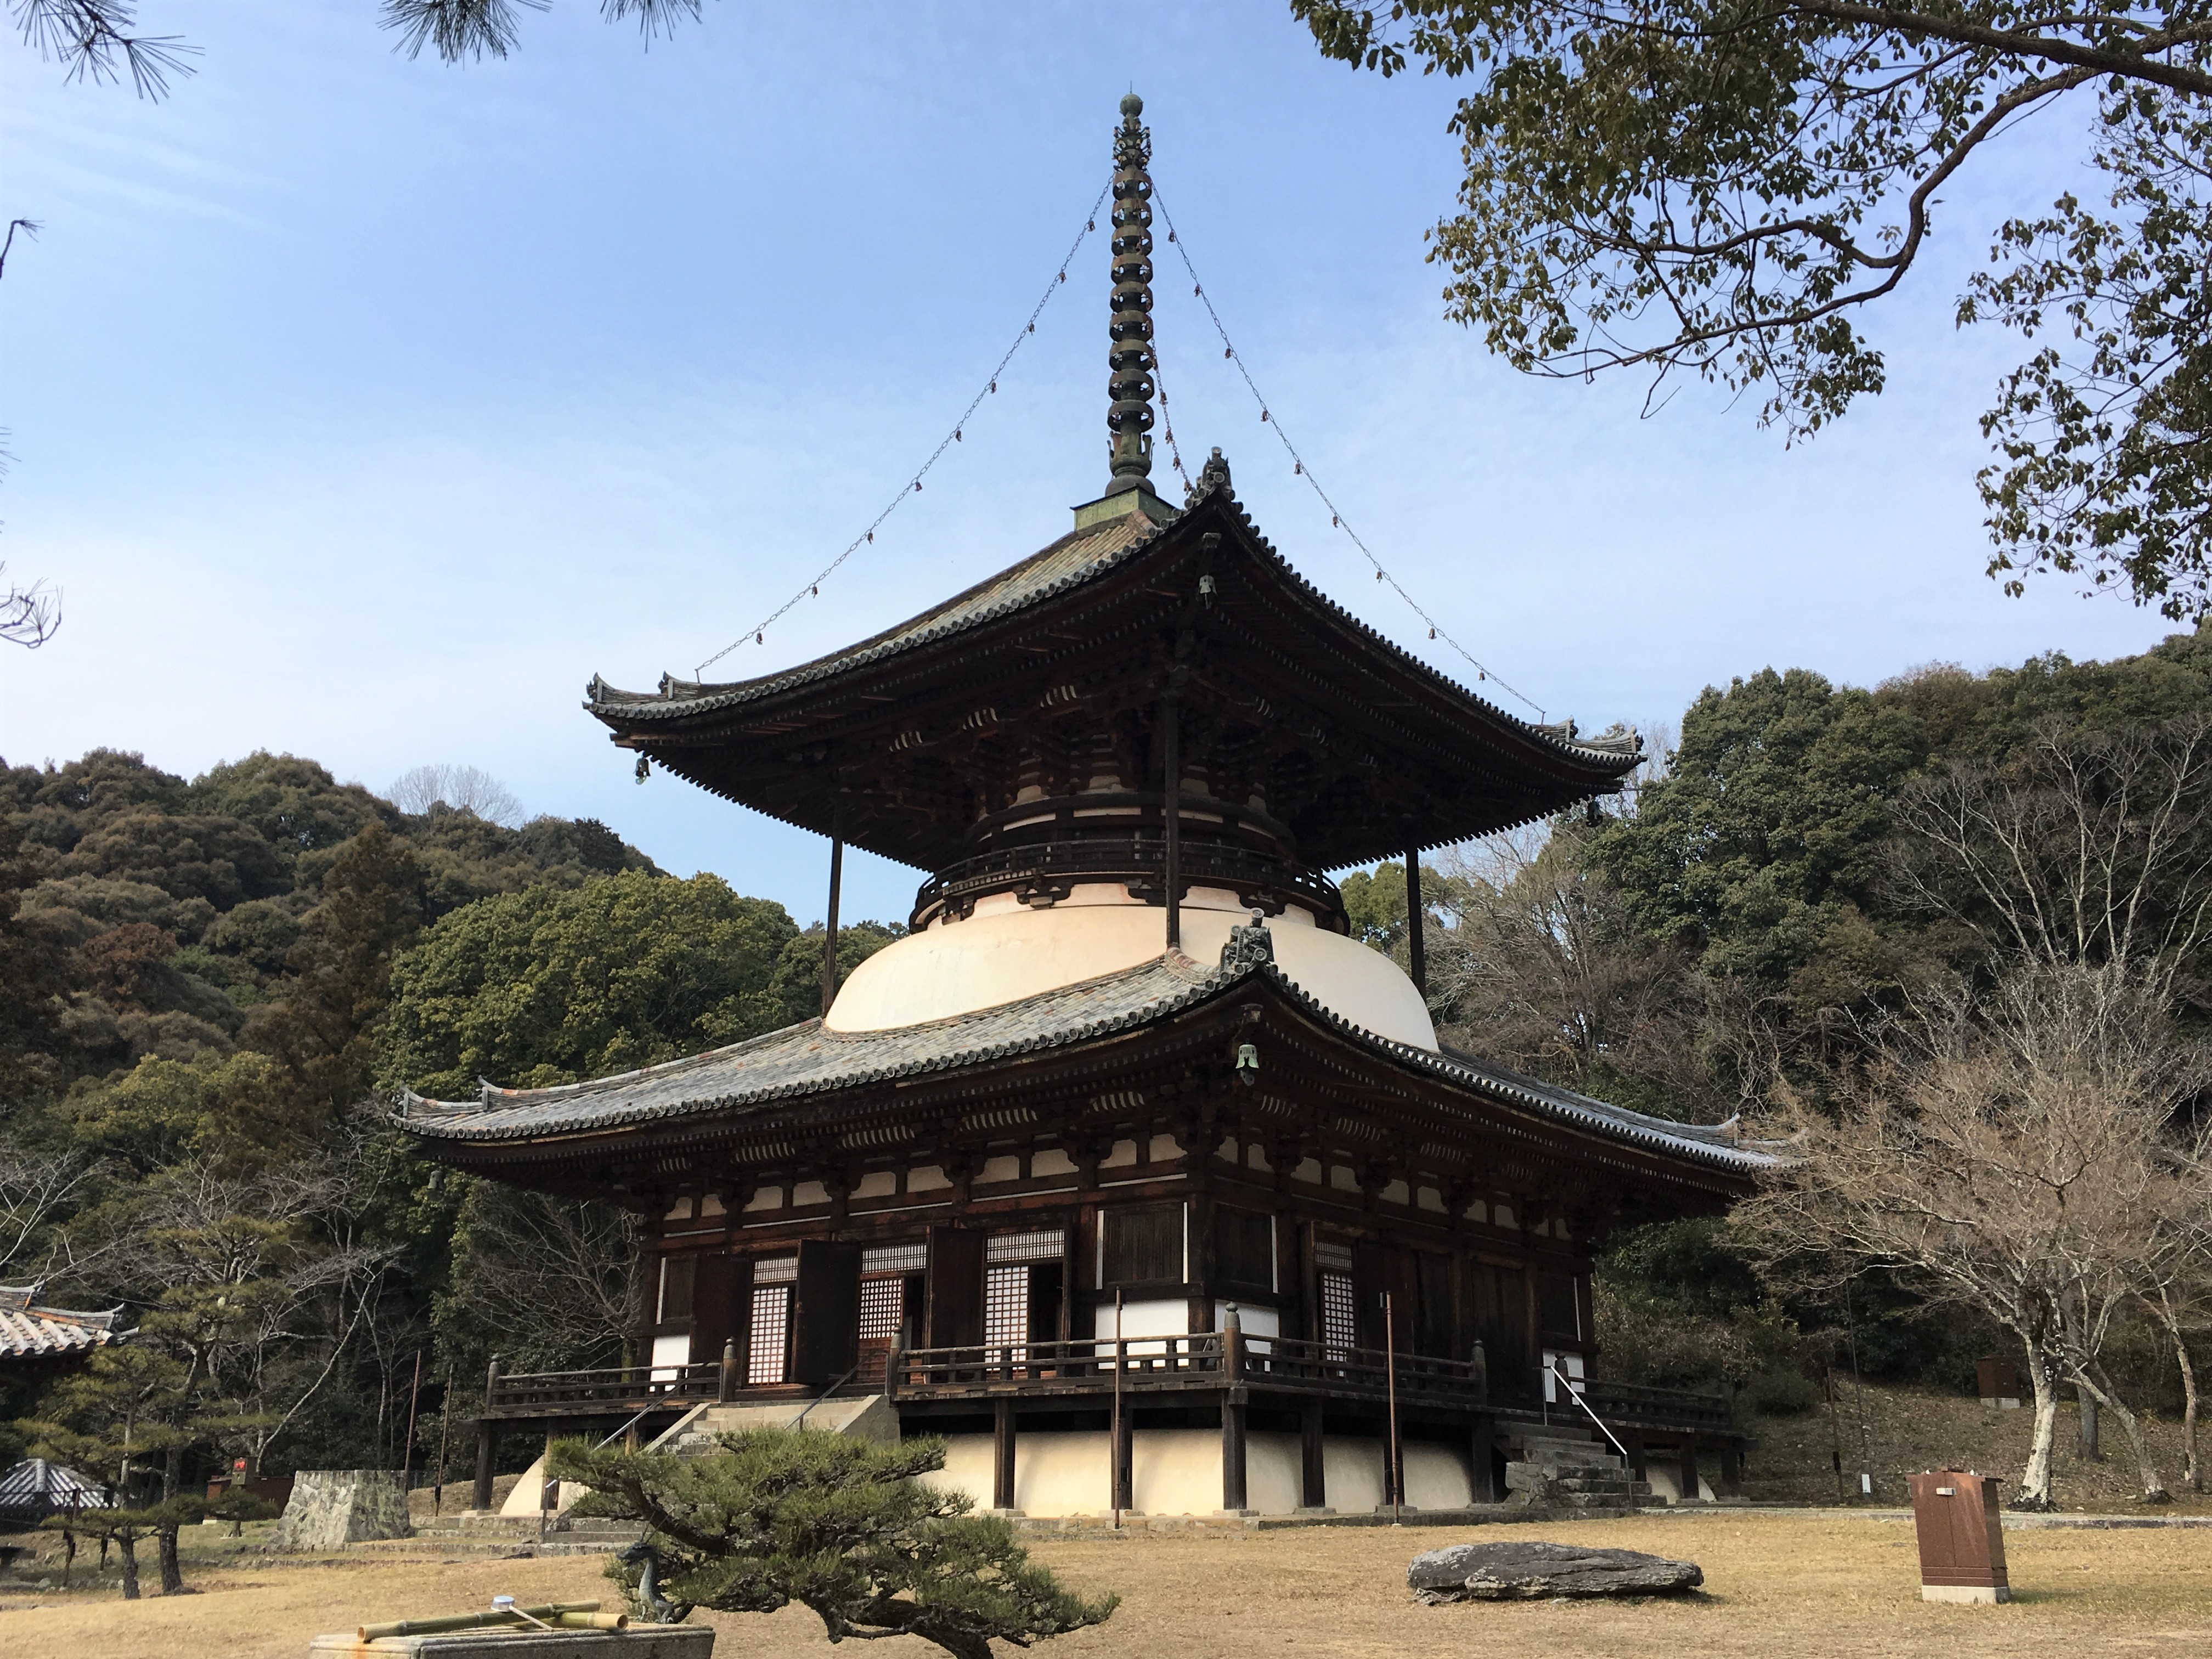 iconic tahoto of Negoro-ji Temple in Iwade Japan